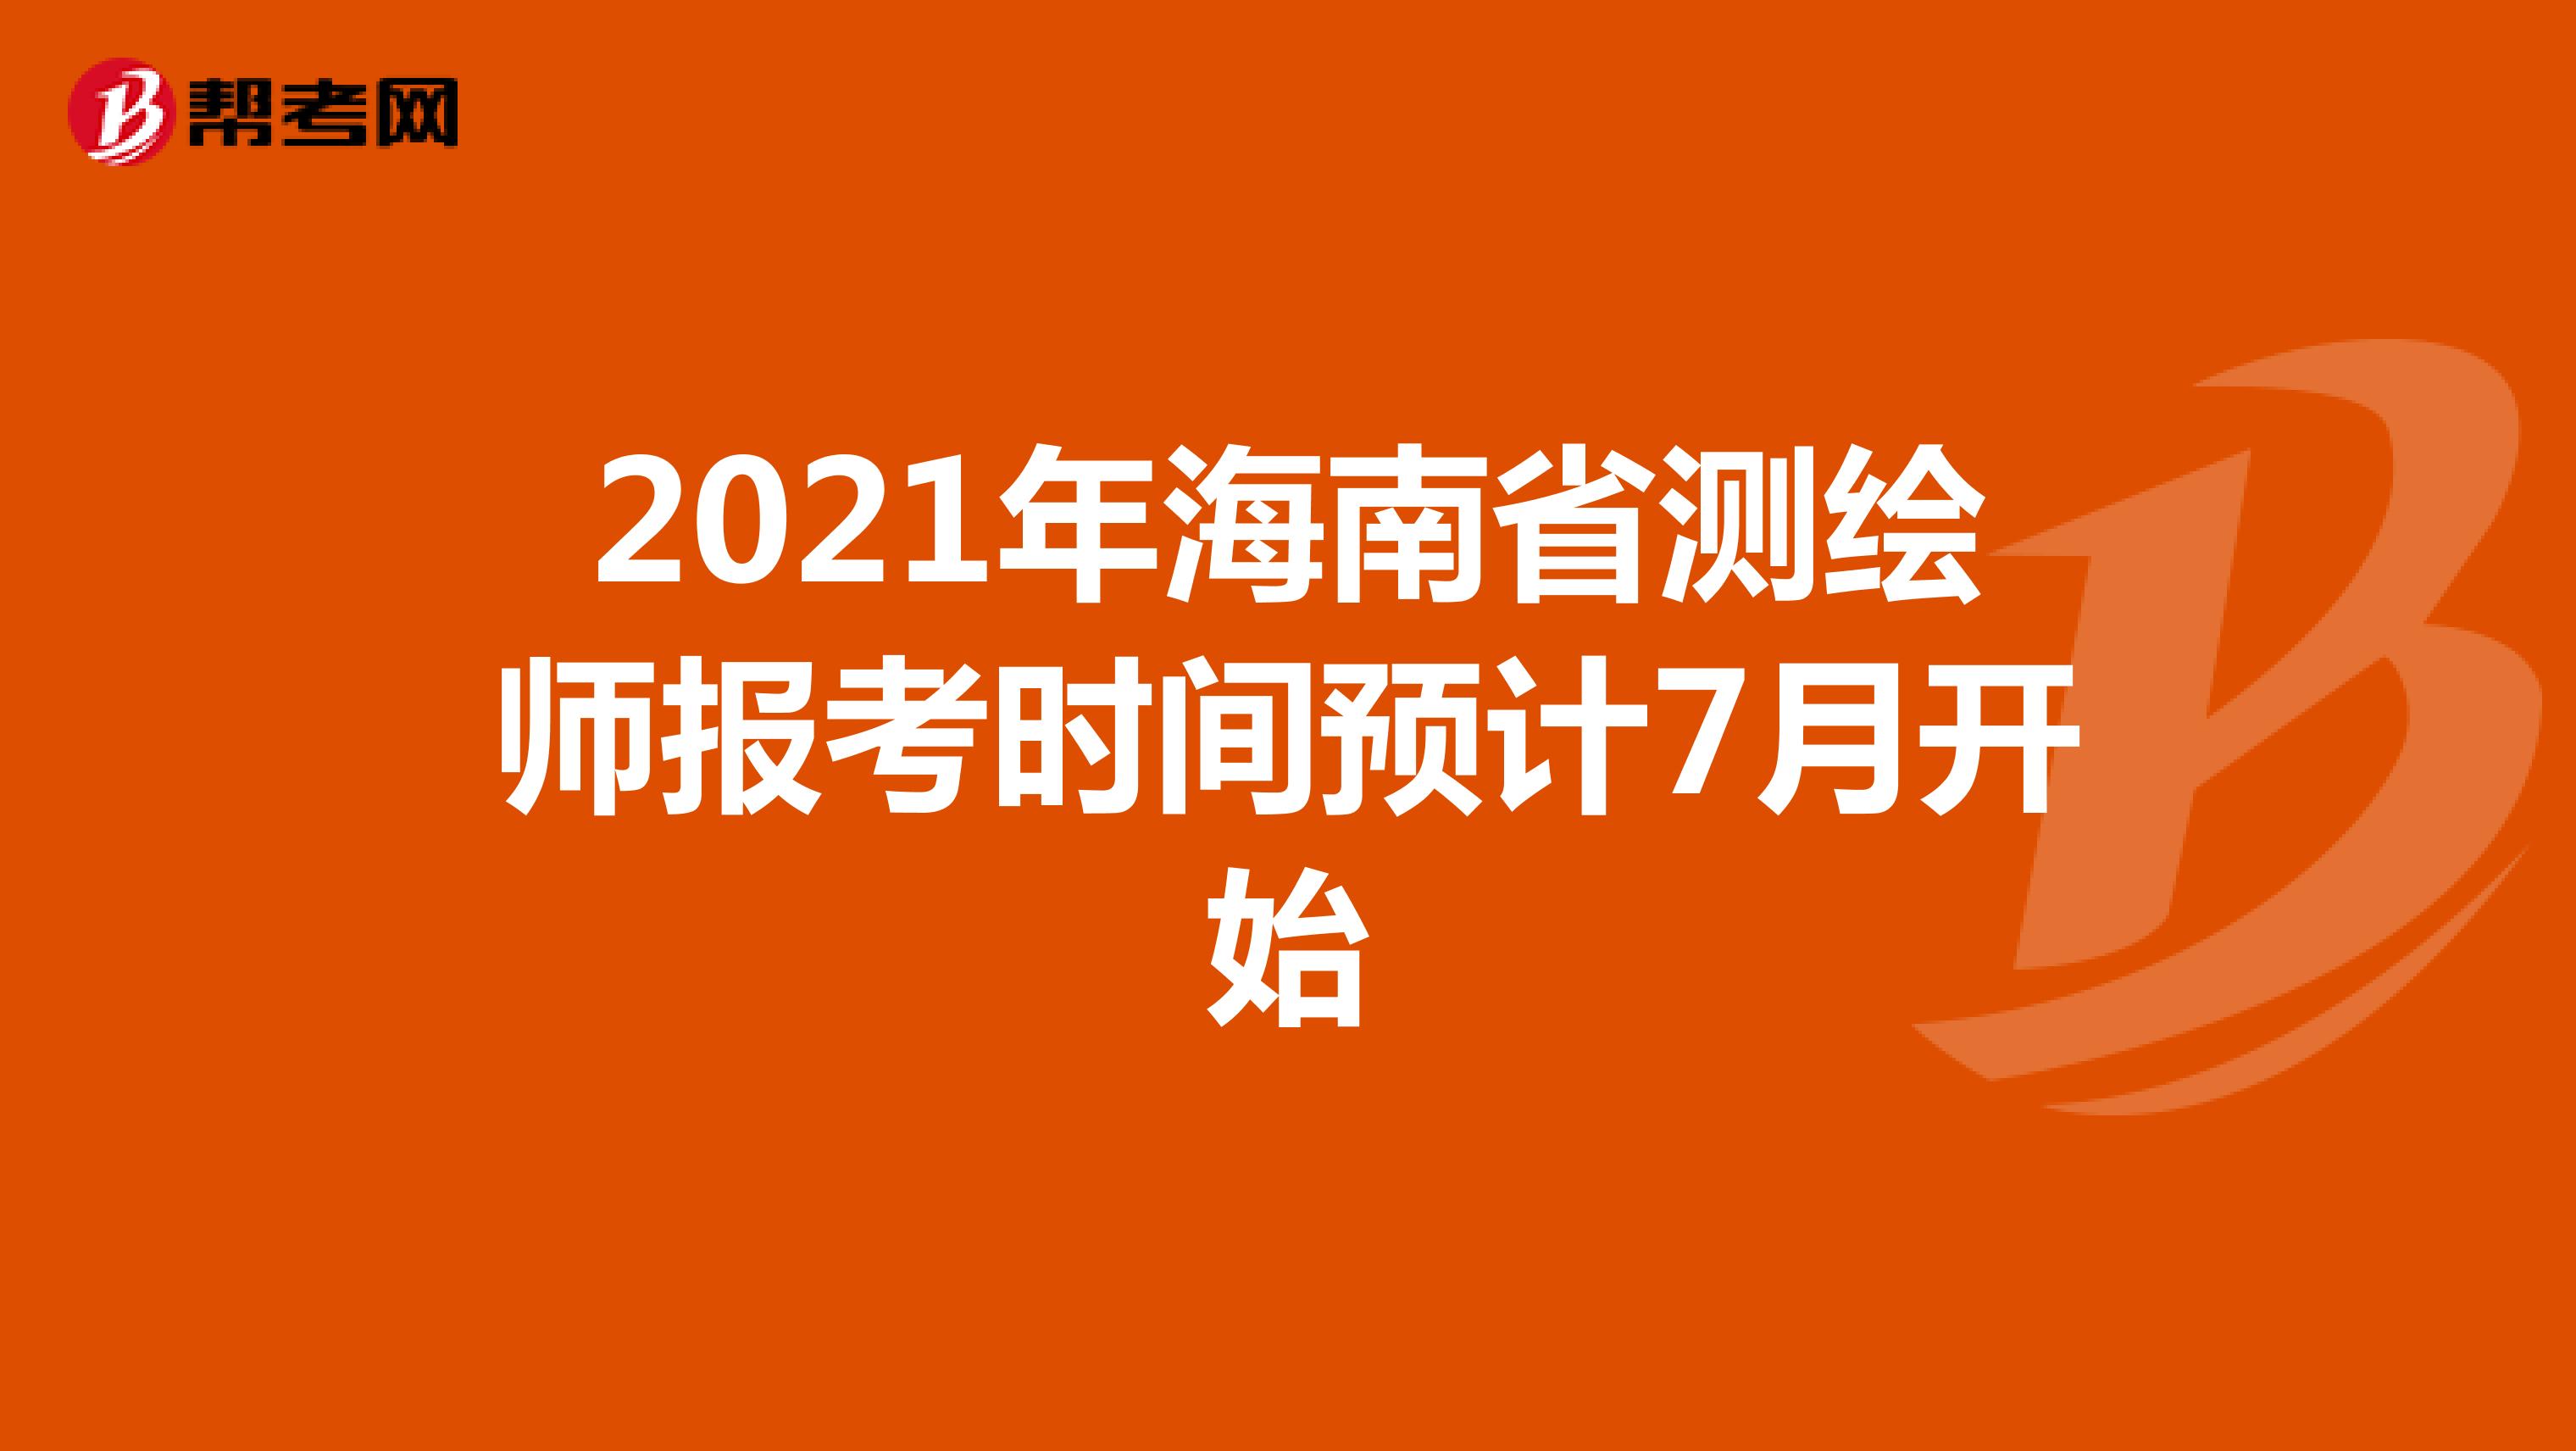 2021年海南省测绘师报考时间预计7月开始